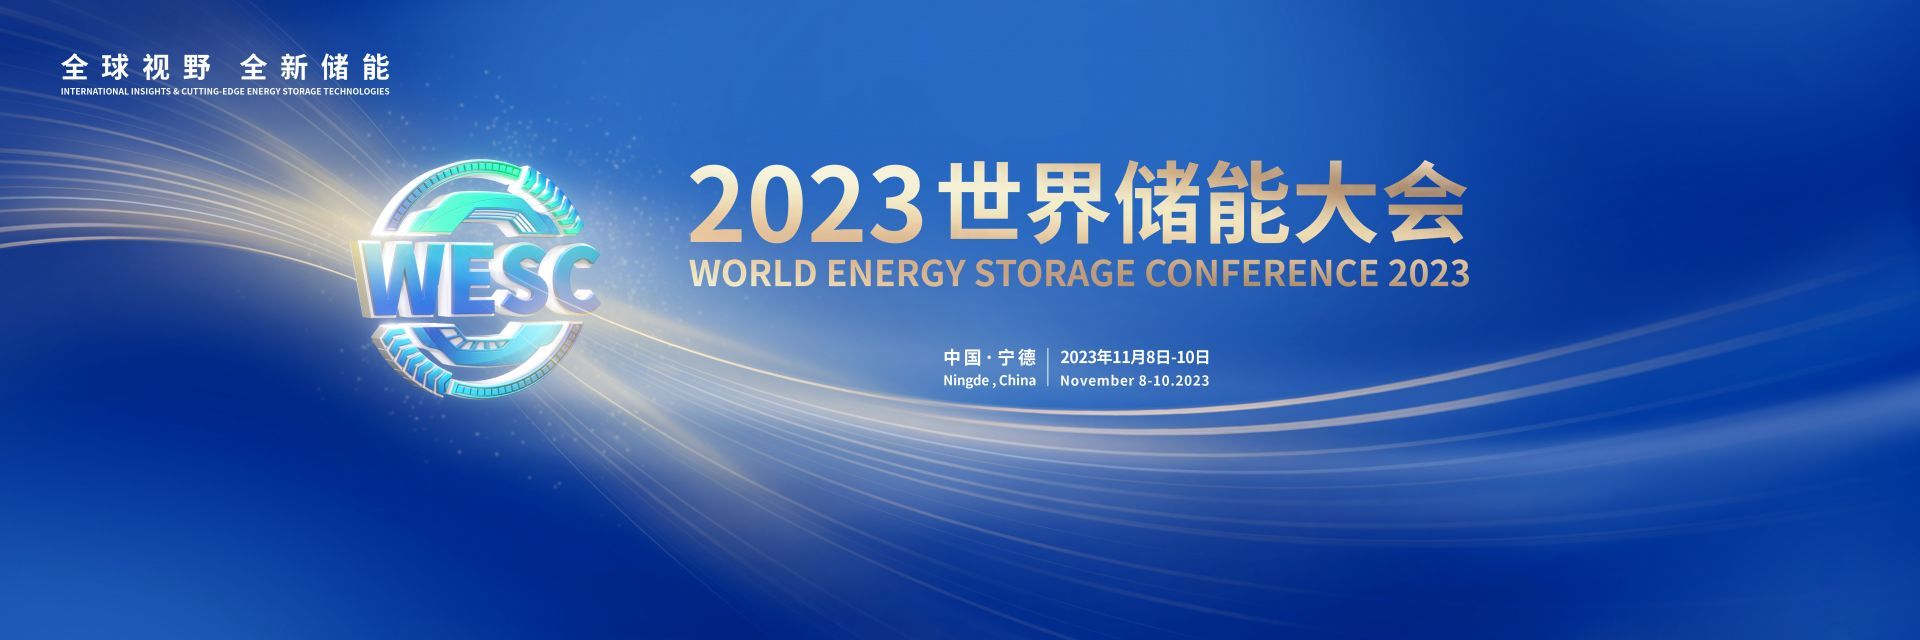 快讯 | 2023世界储能大会将于11月8日在福建宁德举办